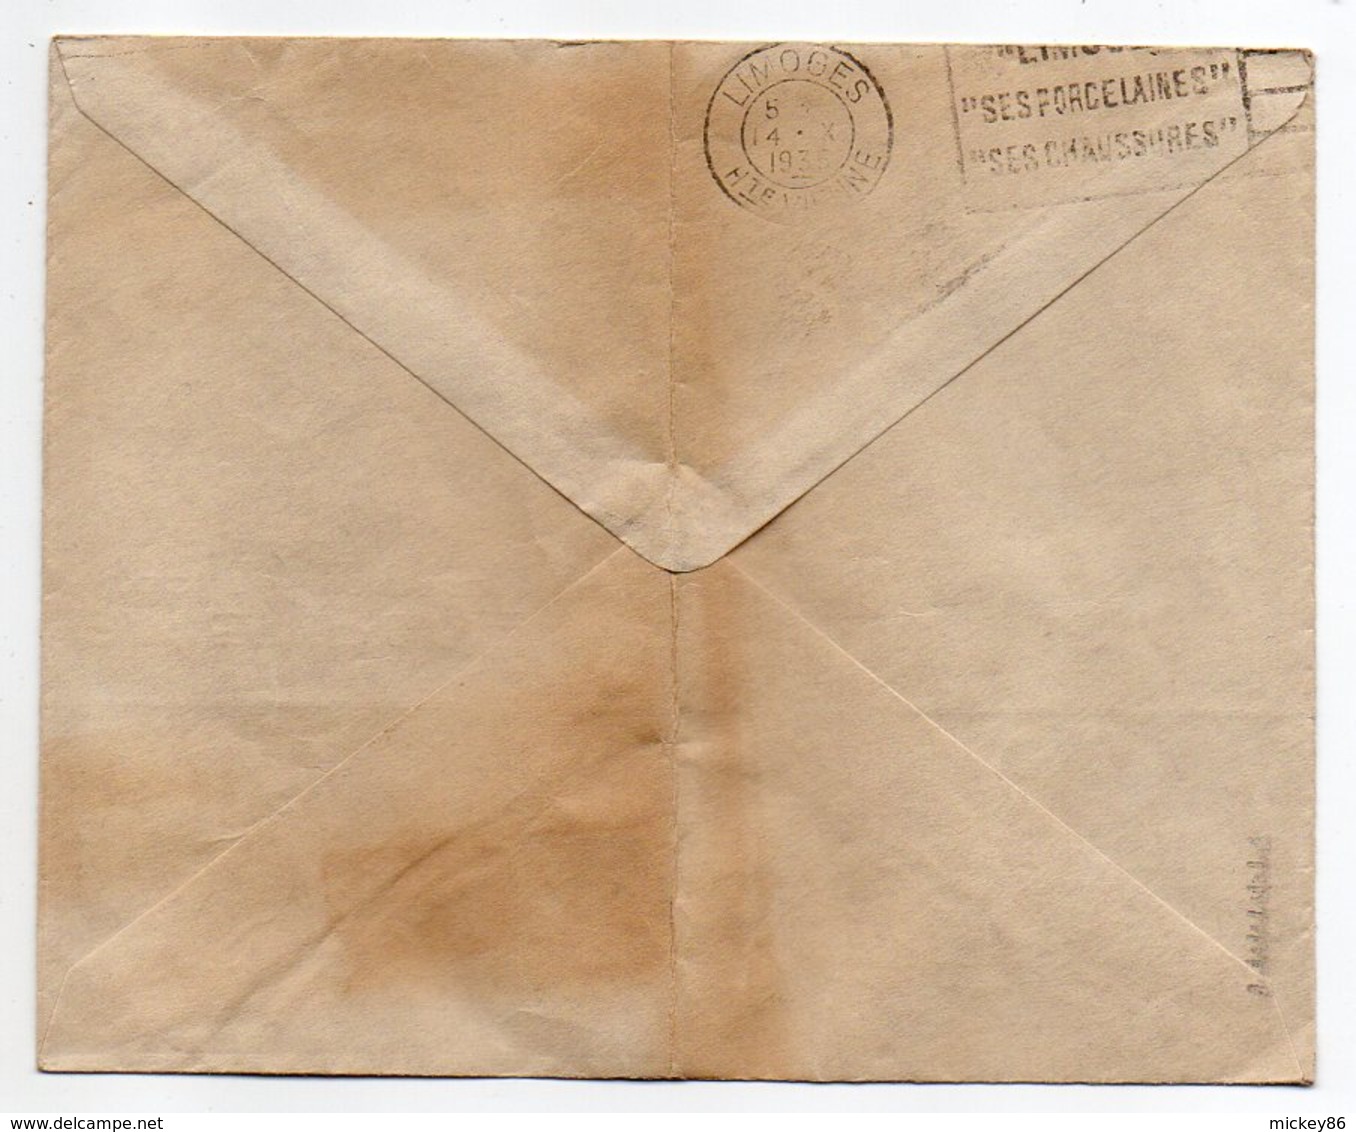 Suisse-1935--Lettre De BALE  Pour LIMOGES-87 (France)-timbre Seul Sur Lettre-cachet BASEL 1--G.KIEFFER & Cie - Brieven En Documenten